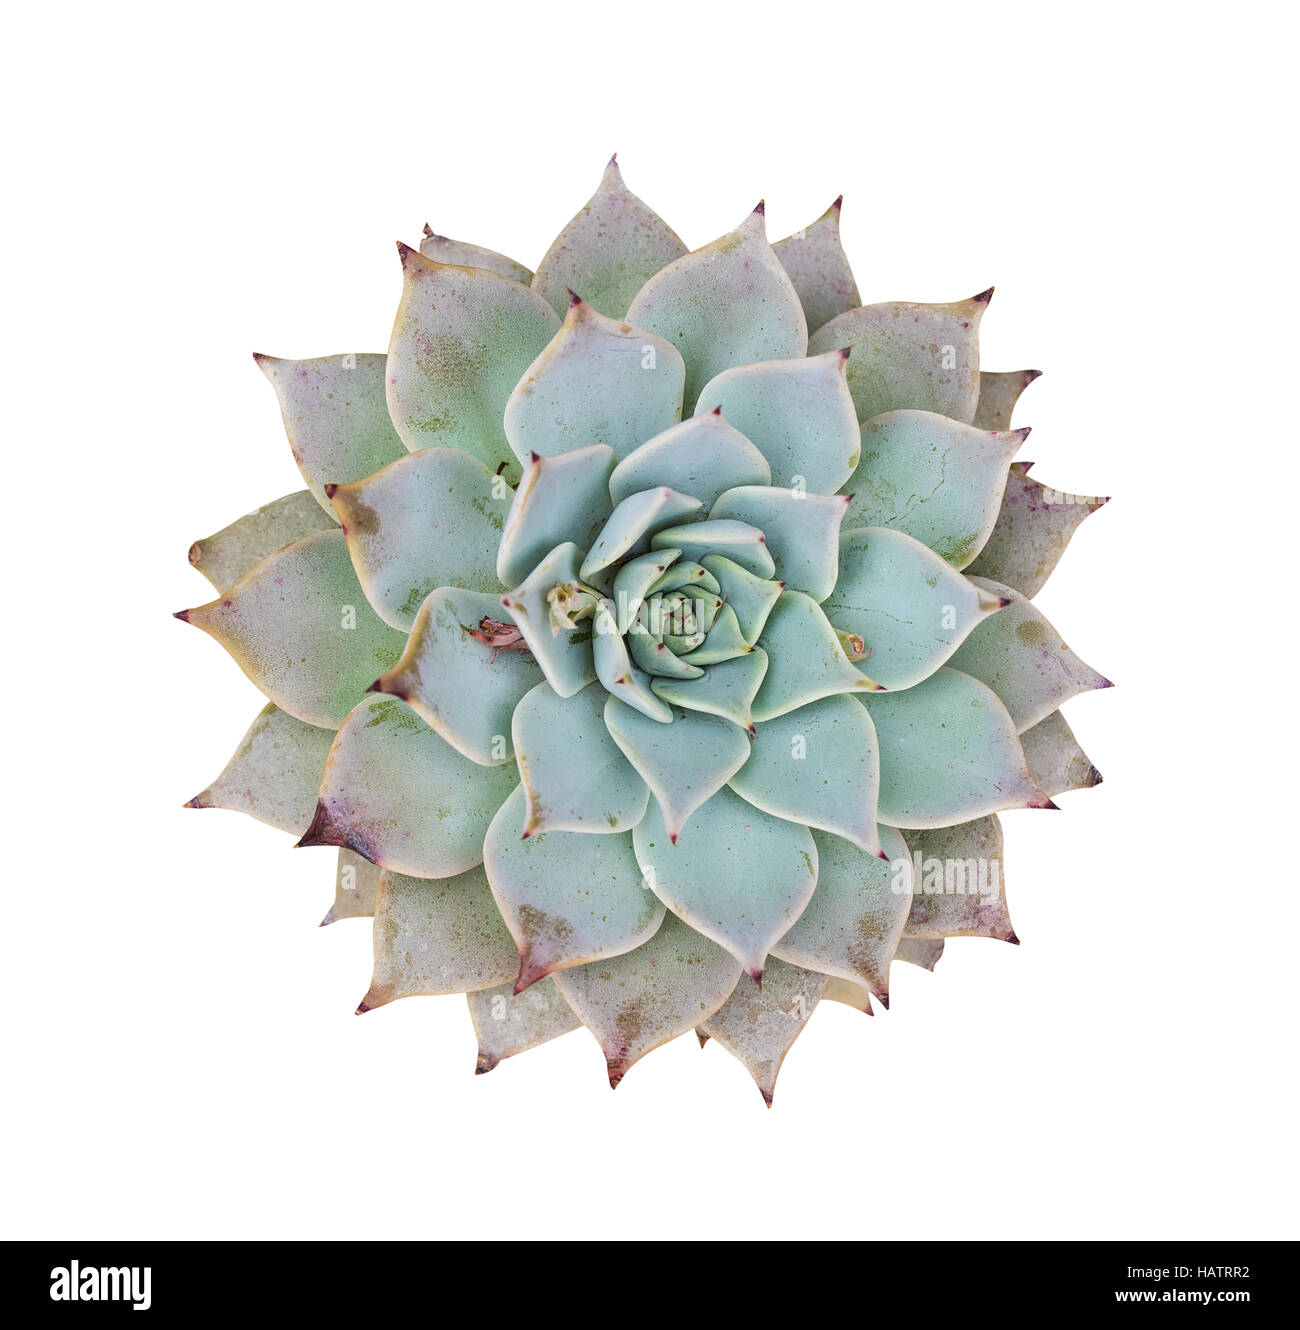 Arrangement rectangulaire de plantes succulentes ; cactus plantes grasses dans un semoir Banque D'Images